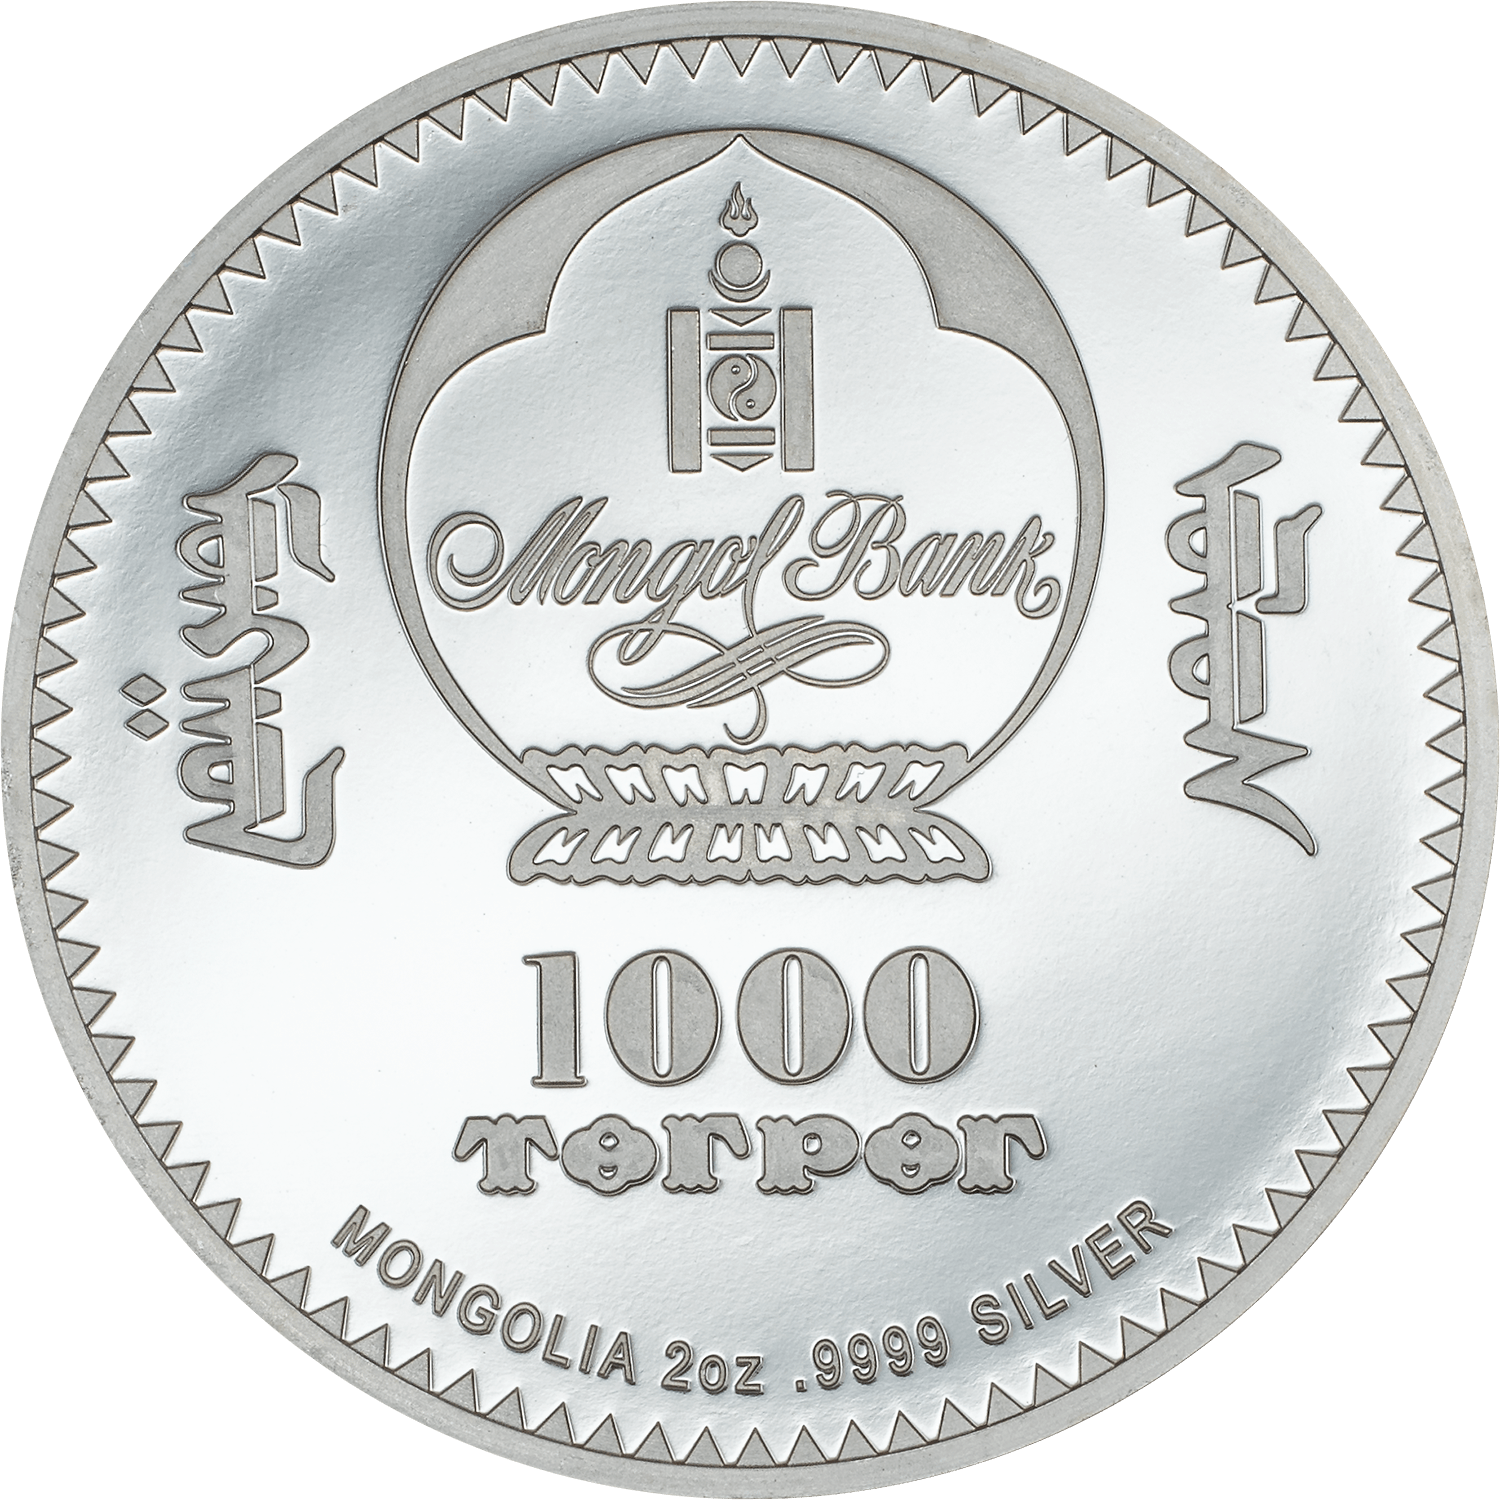 IMPERIAL CORONATION EGG 2 Oz Silver Coin 1000 Togrog Mongolia 2024 - PARTHAVA COIN